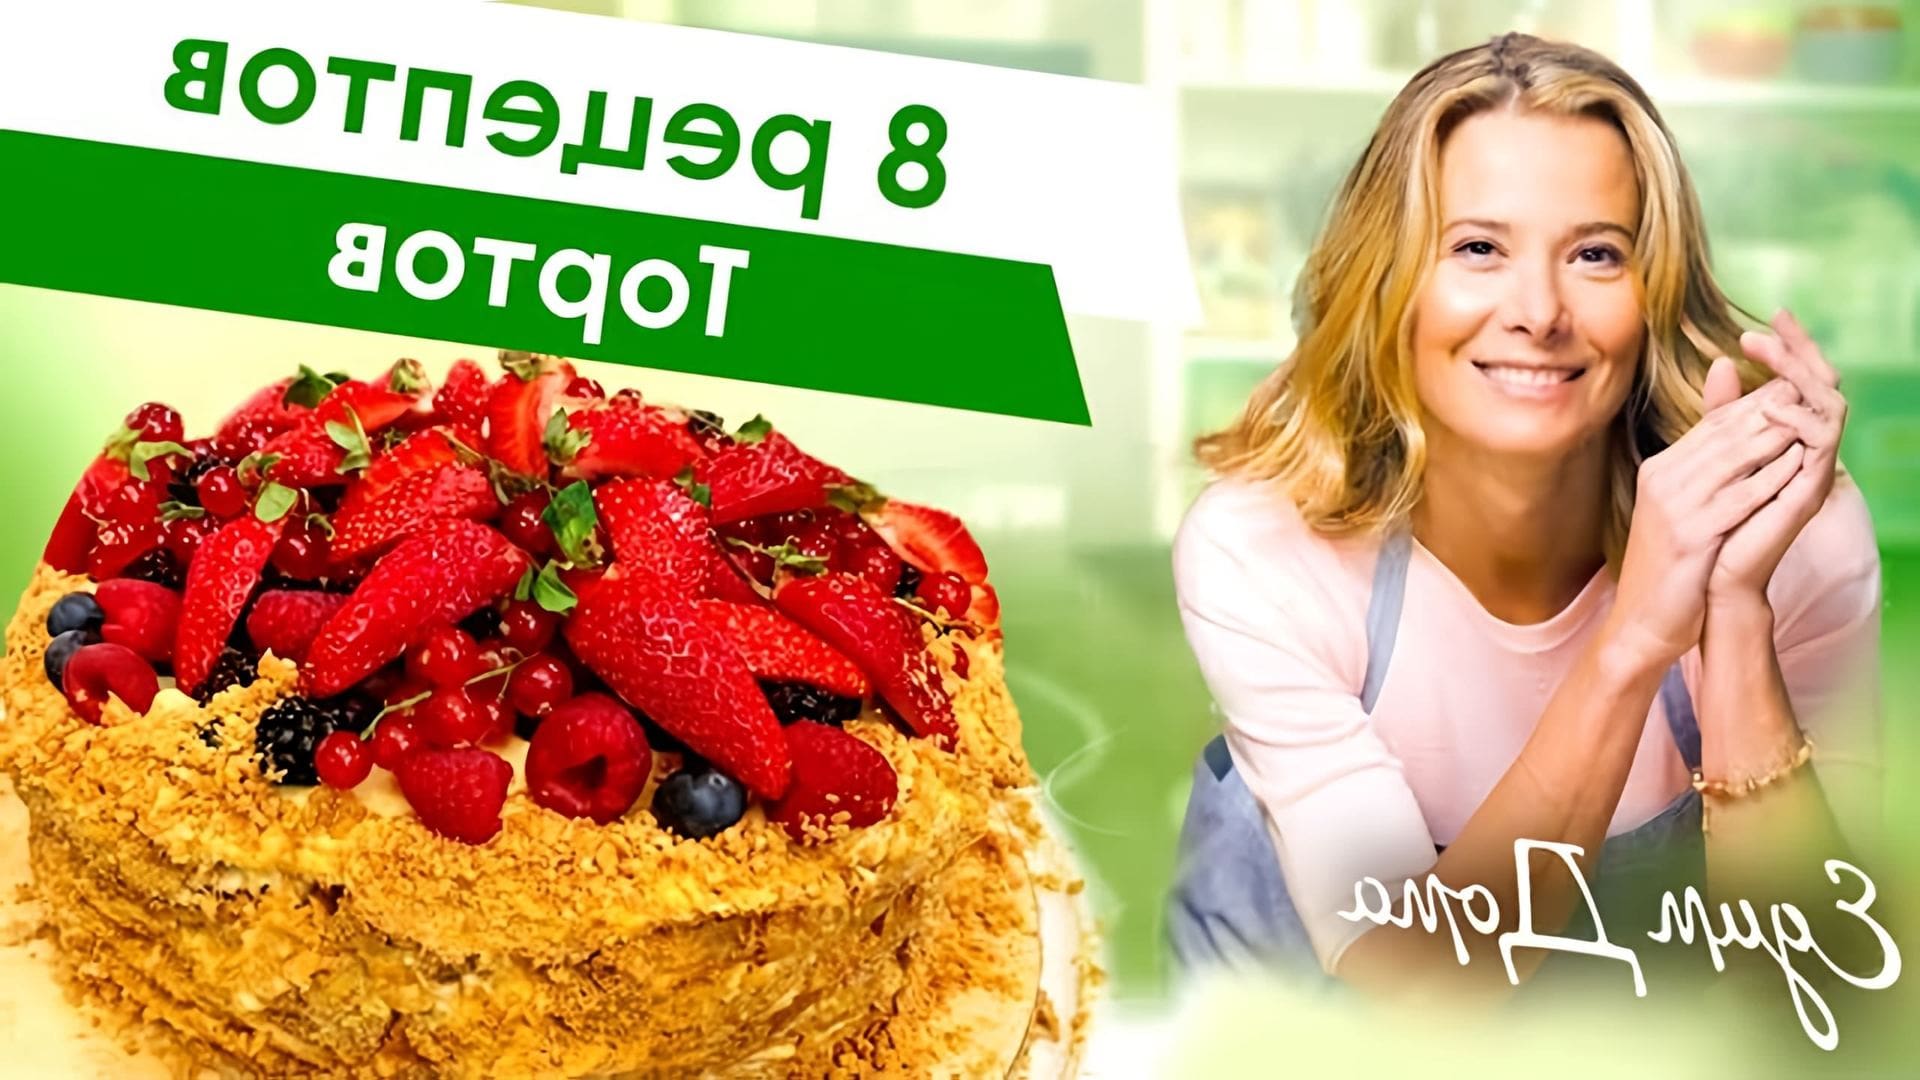 Видео показывает рецепты 8 тортов от Юлии Высоцкой: торт Наполеон, шоколадный торт, медовый торт и чизкейк